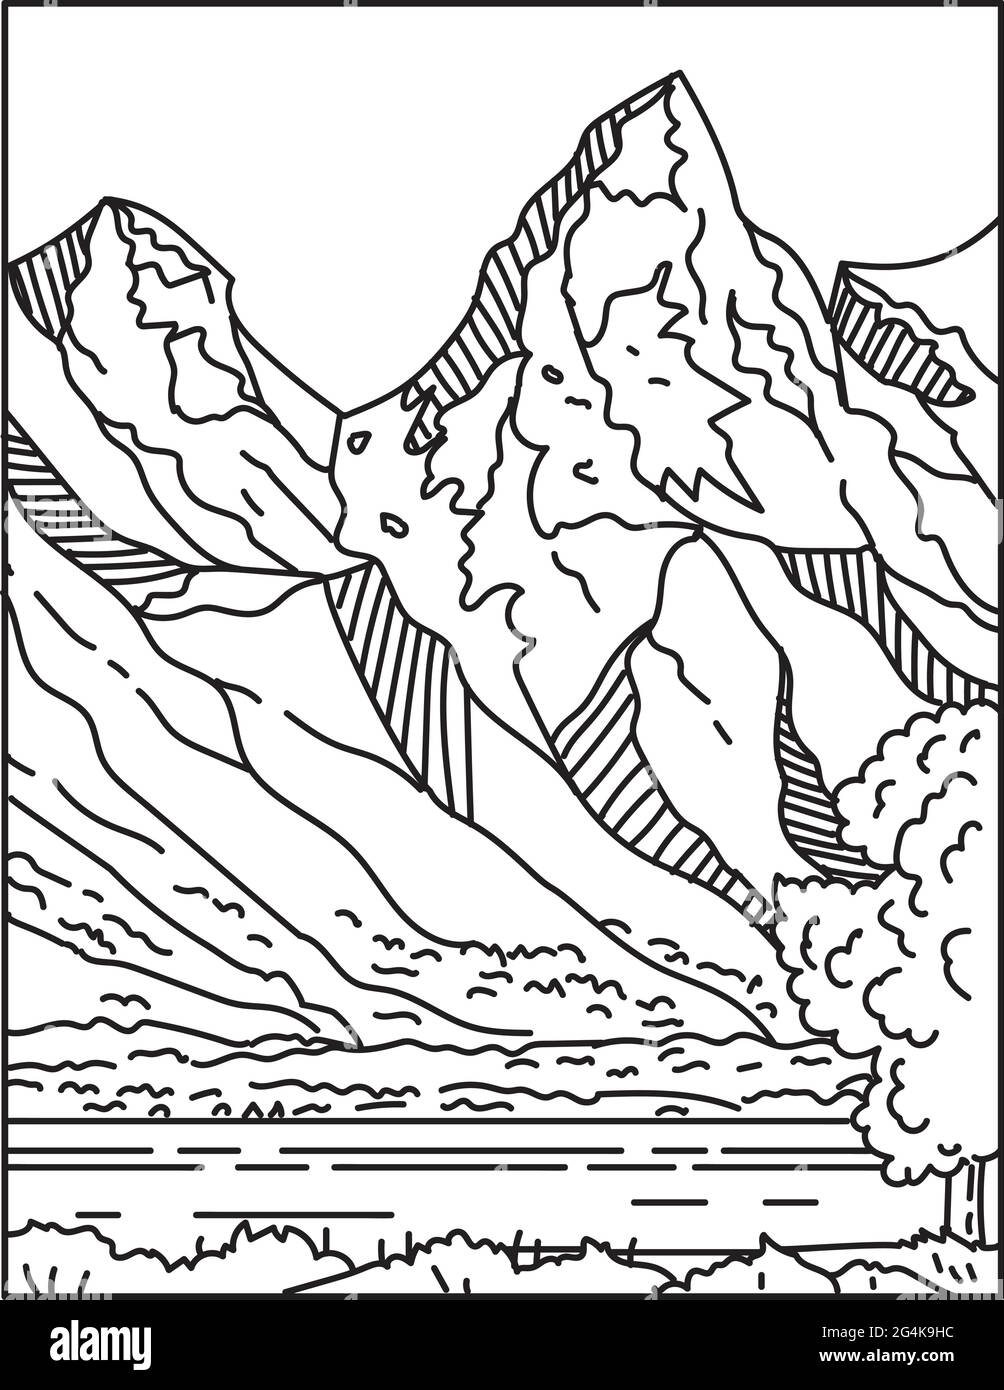 Monolinie Illustration von Jackson Hole oder Jackson's Hole mit der Teton Range im Hintergrund befindet sich in Wyoming, USA in r getan Stock Vektor